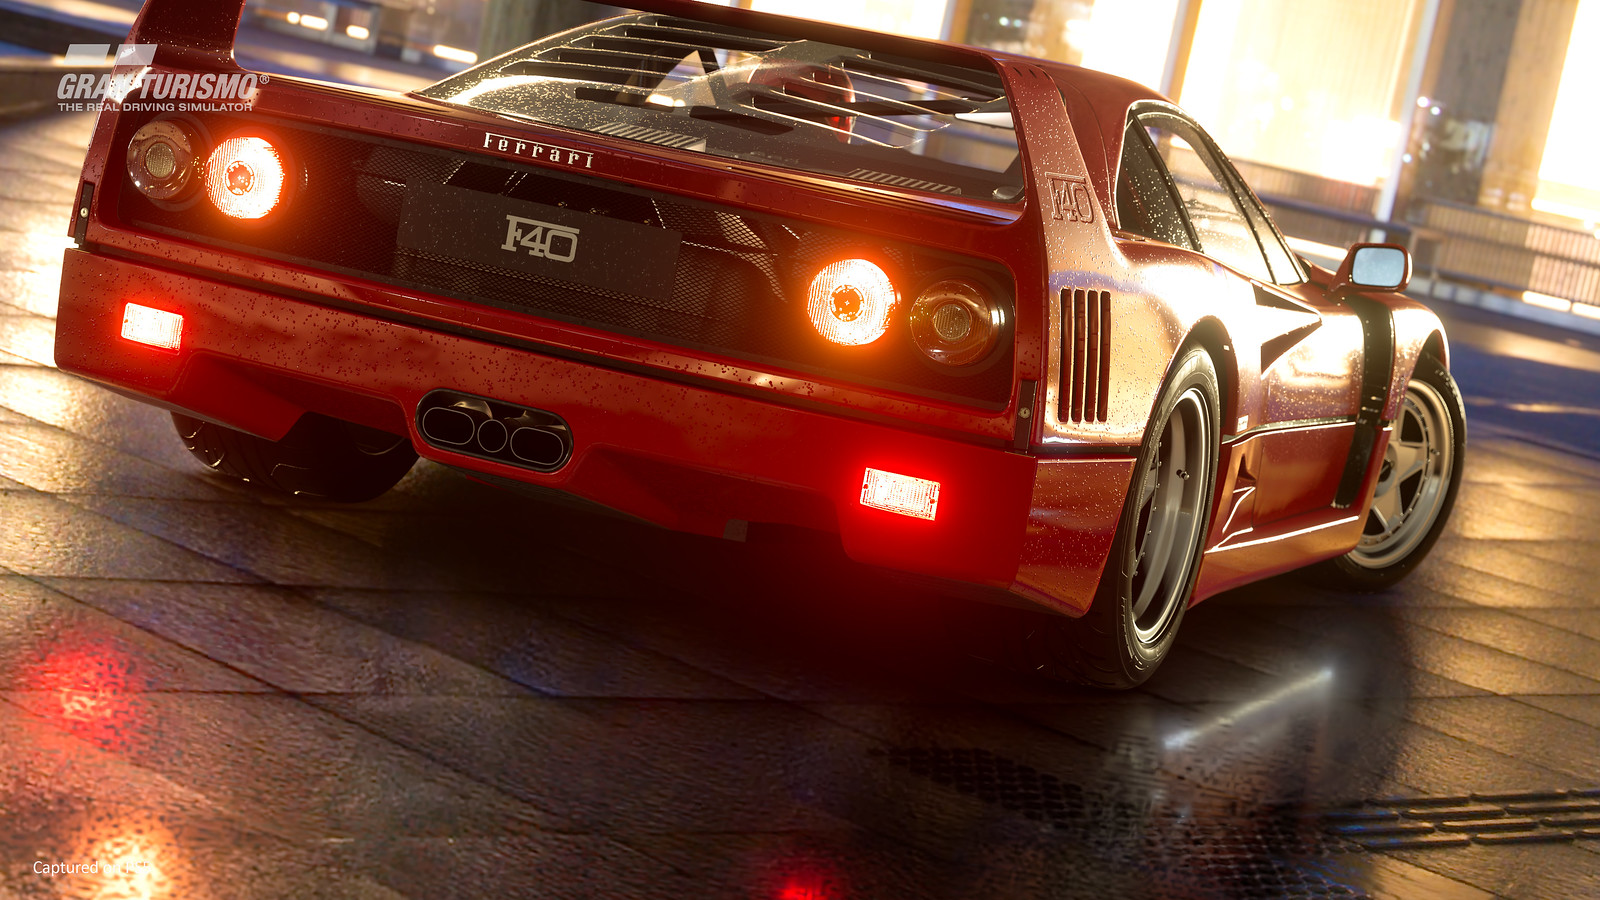 Gran Turismo 7 recibirá un nuevo modo de juego, siete coches